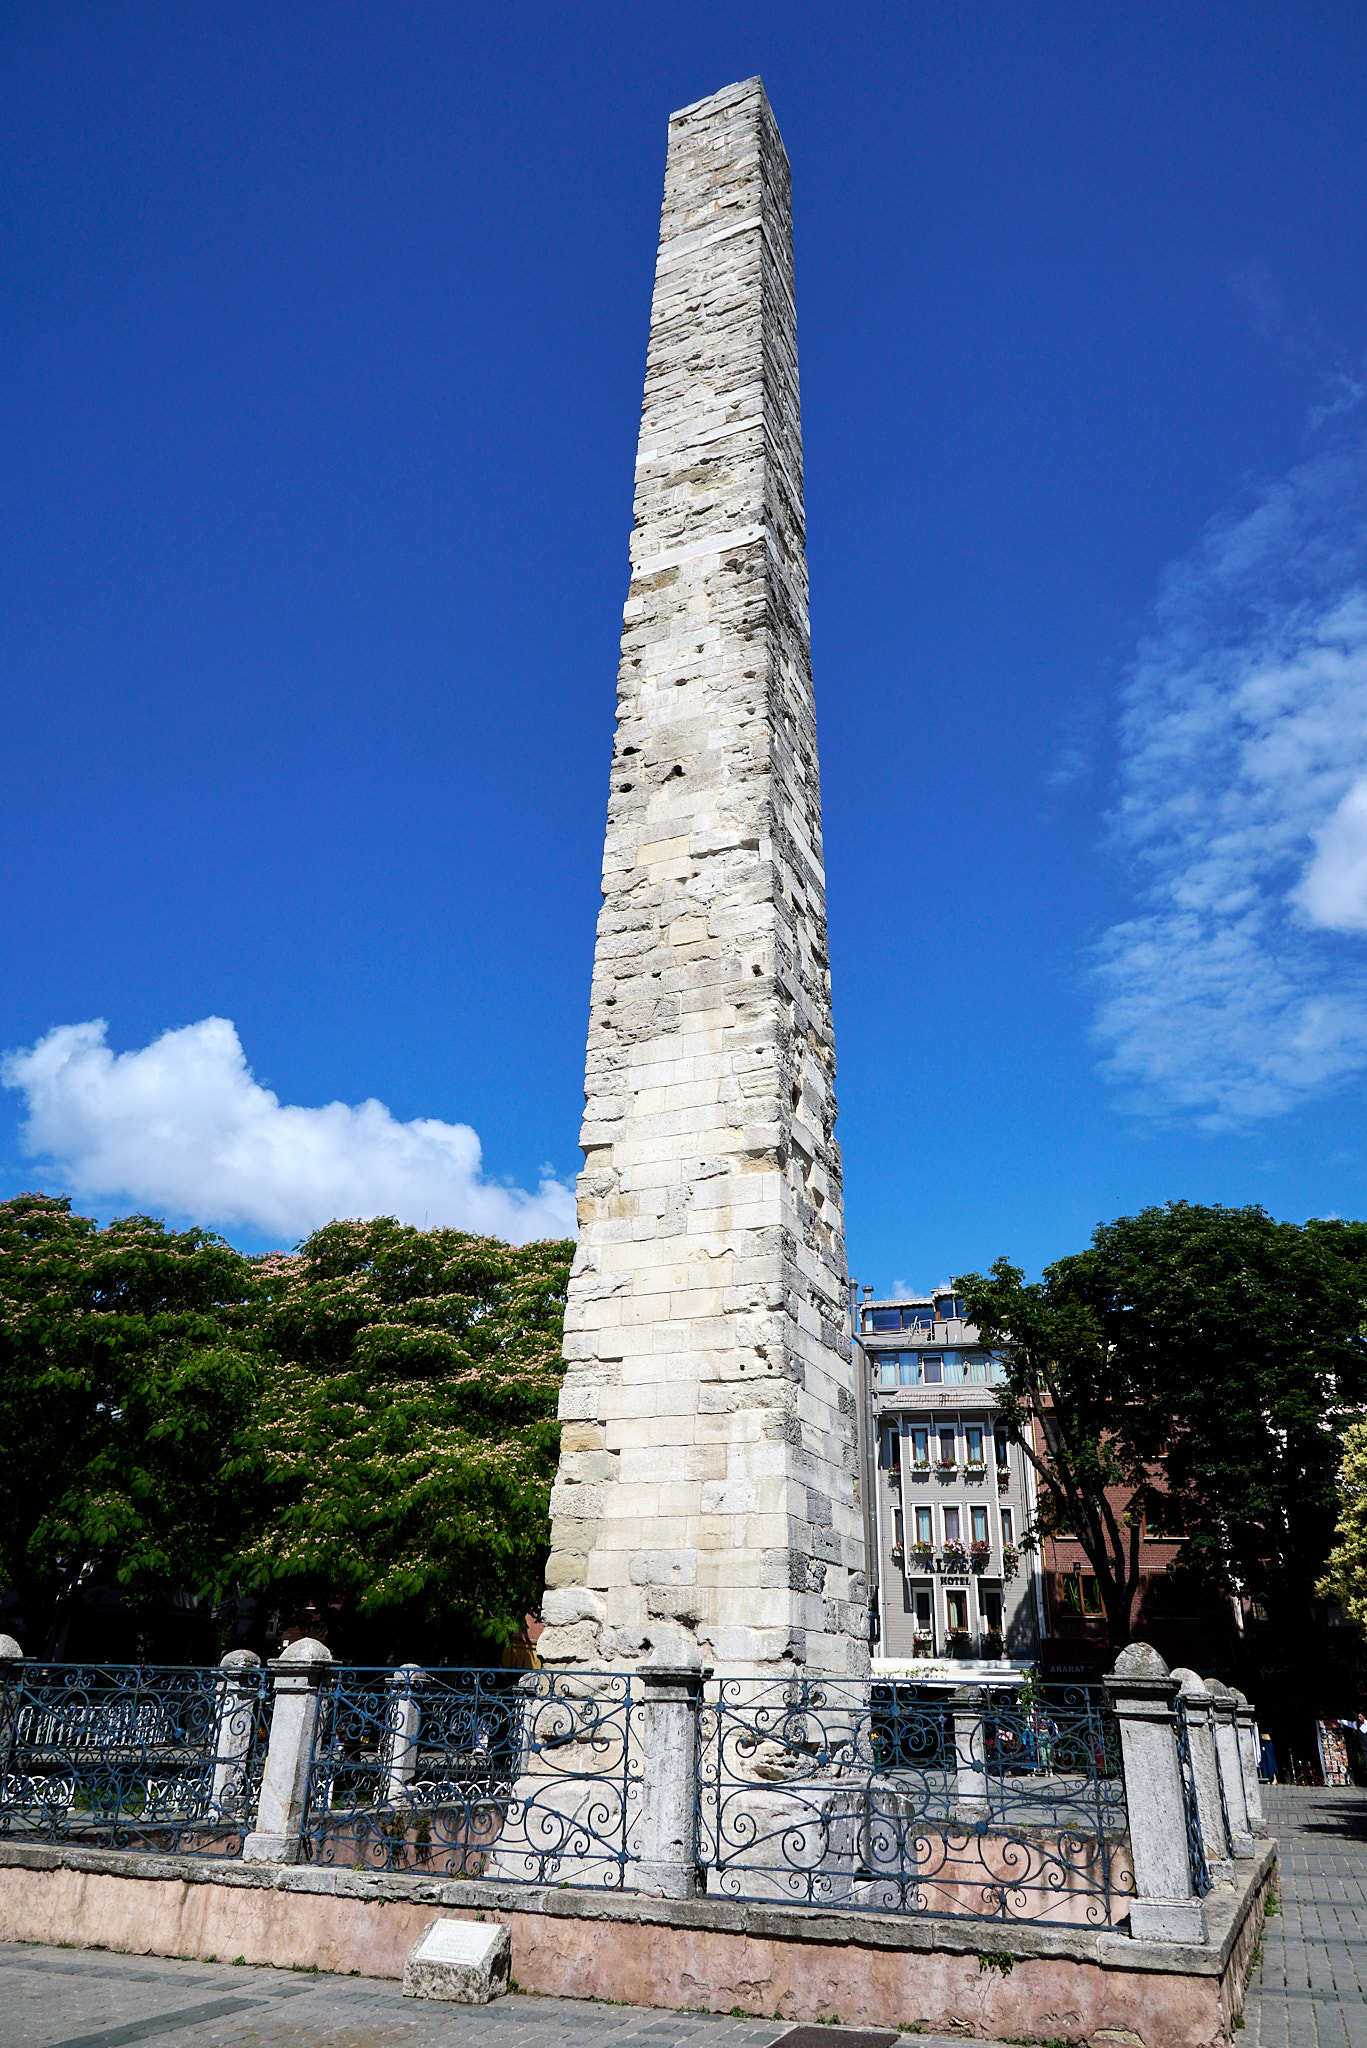 The Walled Obelisk